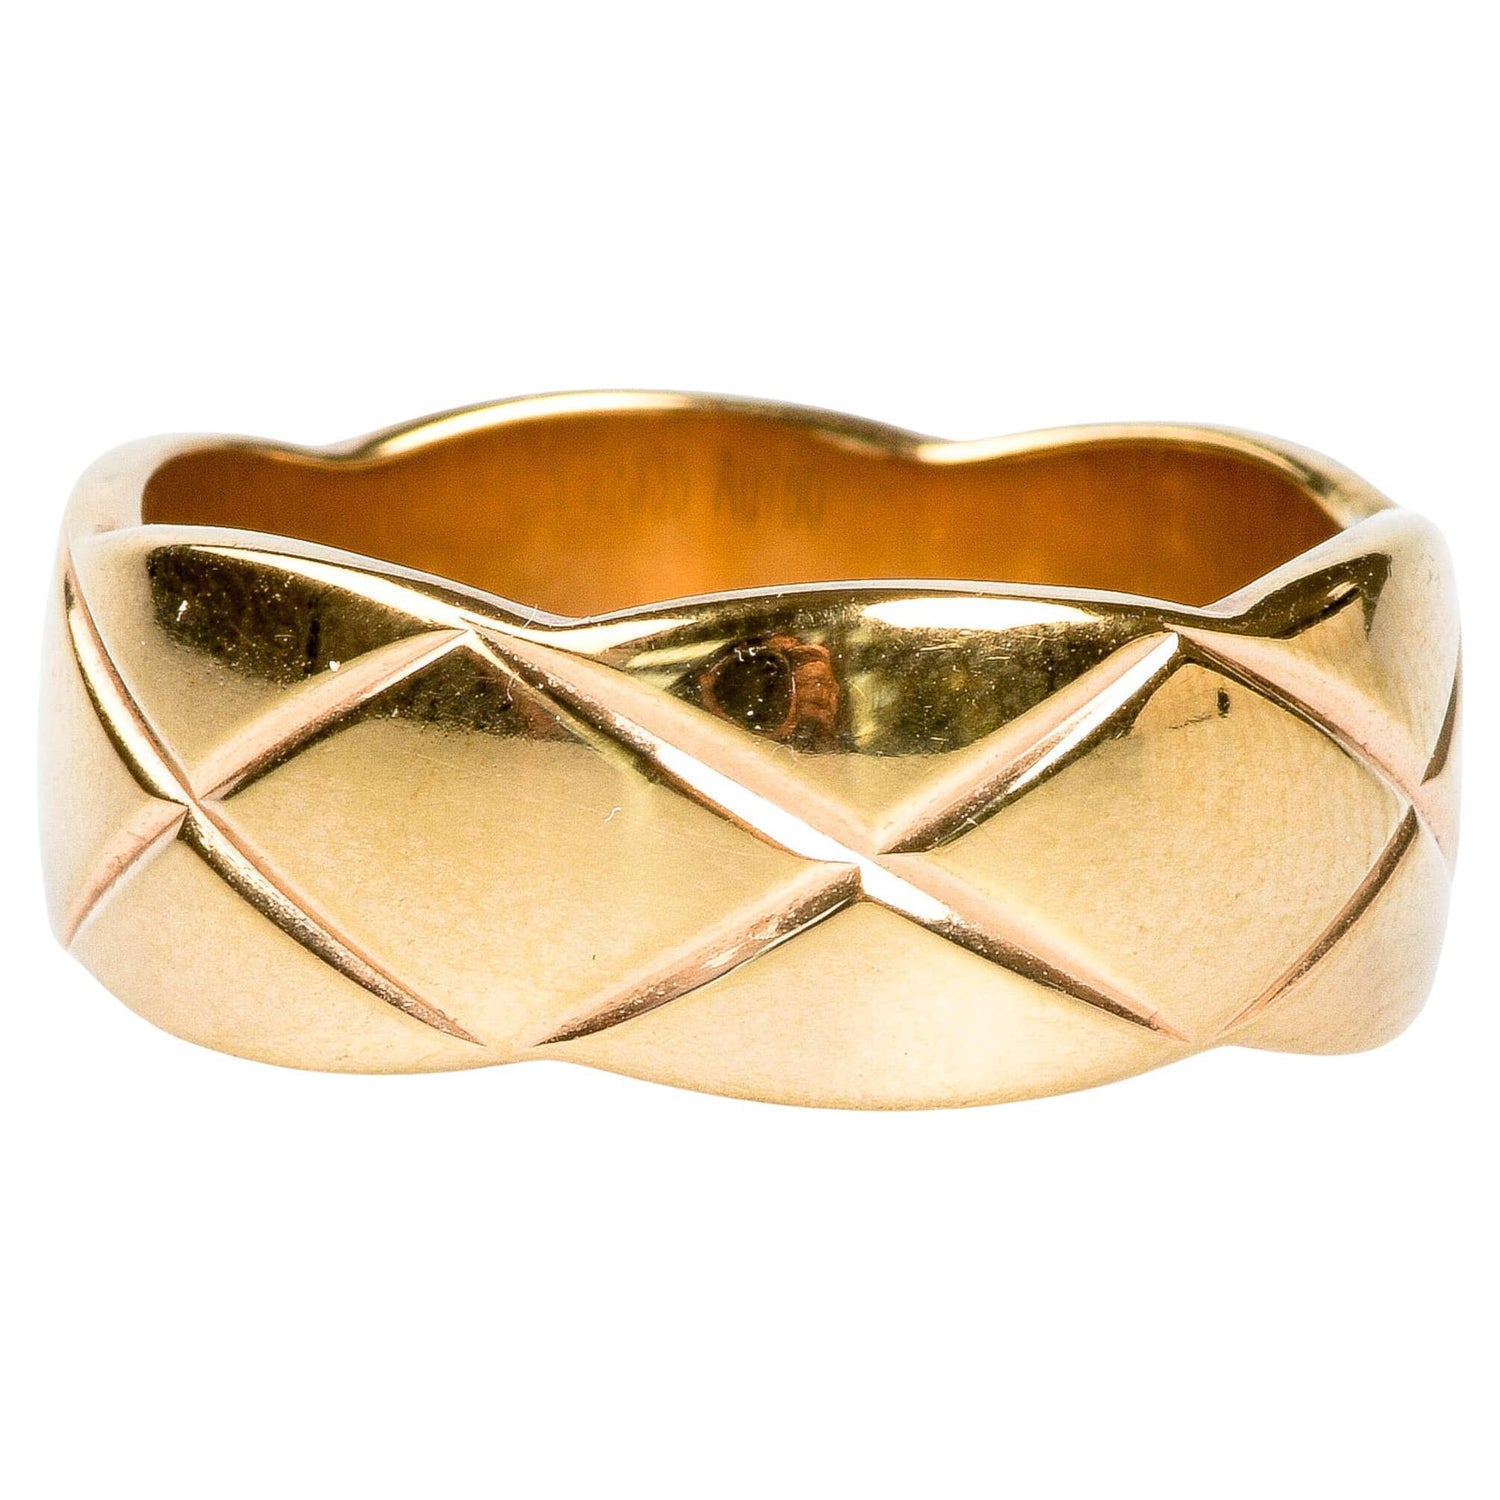 CHANEL Profil De Camellia Diamond Gold Ring